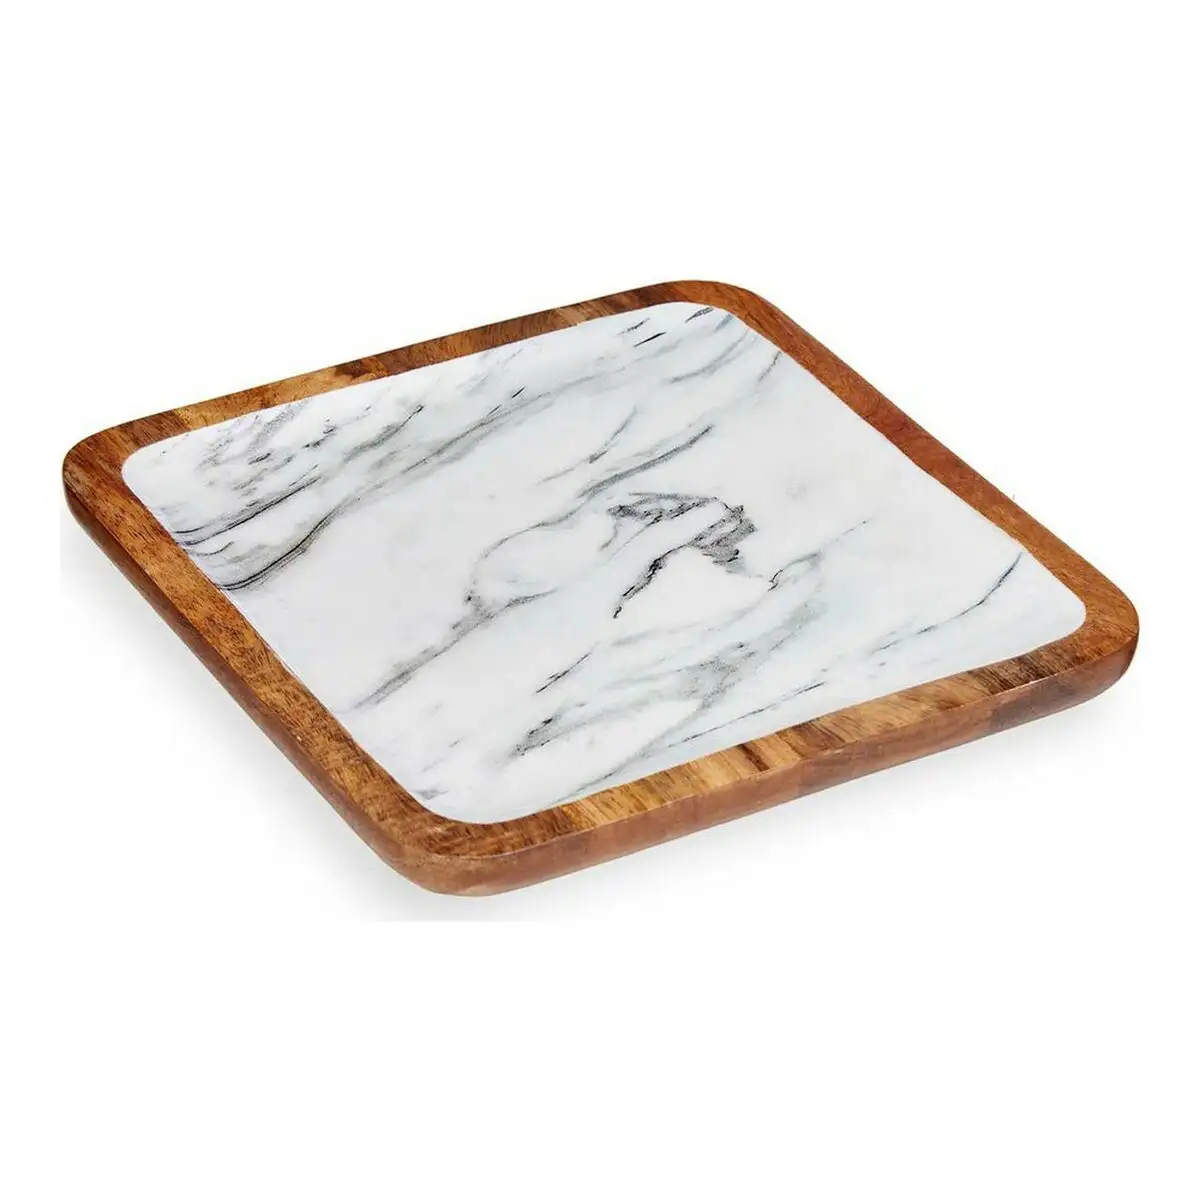 Centre de table blanc marbre bois polyurethane 25 x 25 cm _2395. DIAYTAR SENEGAL - Où Choisir Devient une Expression de Soi. Découvrez notre boutique en ligne et trouvez des articles qui révèlent votre personnalité et votre style.